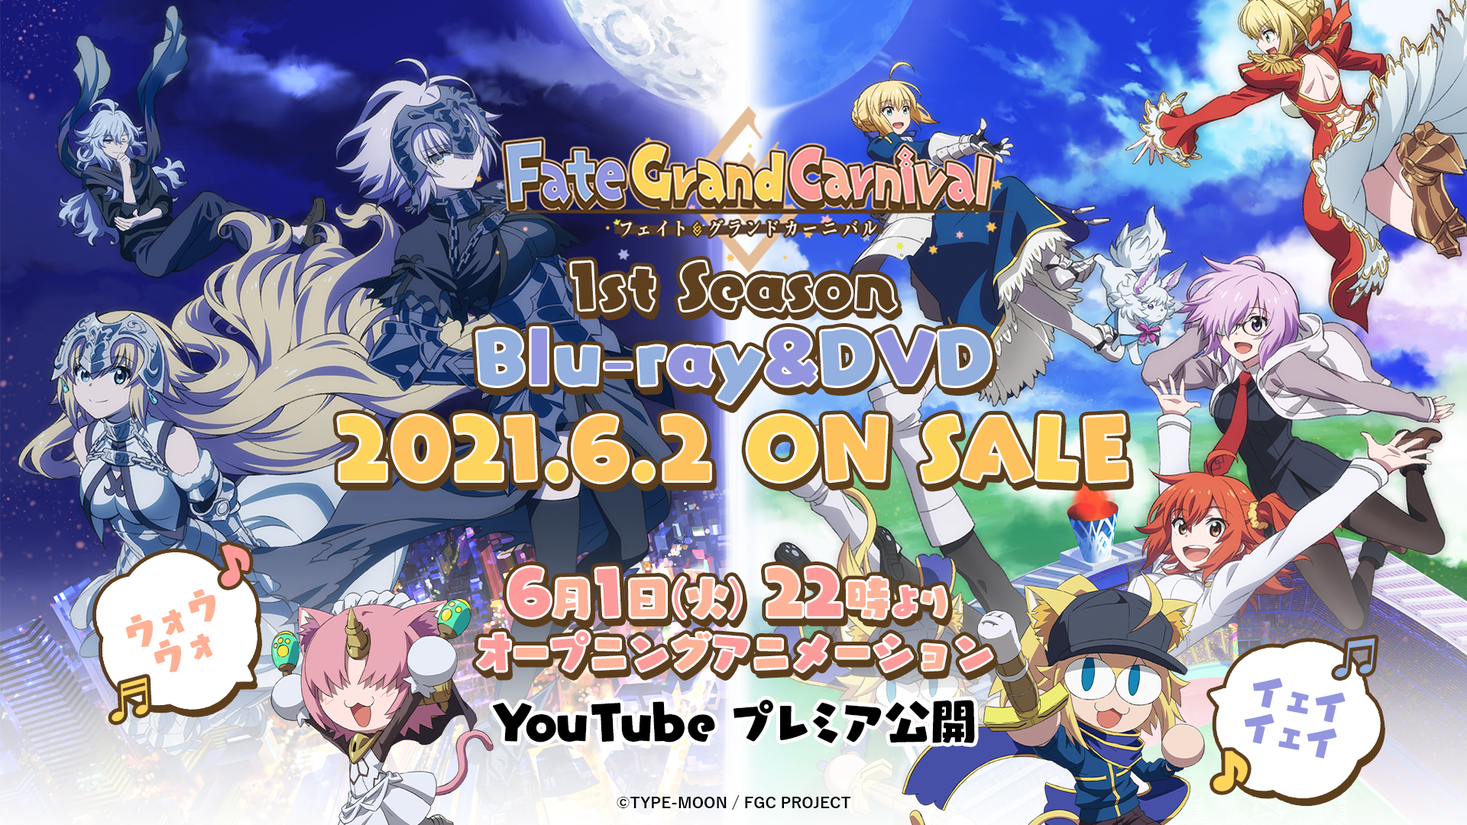 6/2(水)OVA「Fate/Grand Carnival」1st Season発売】OPアニメーション